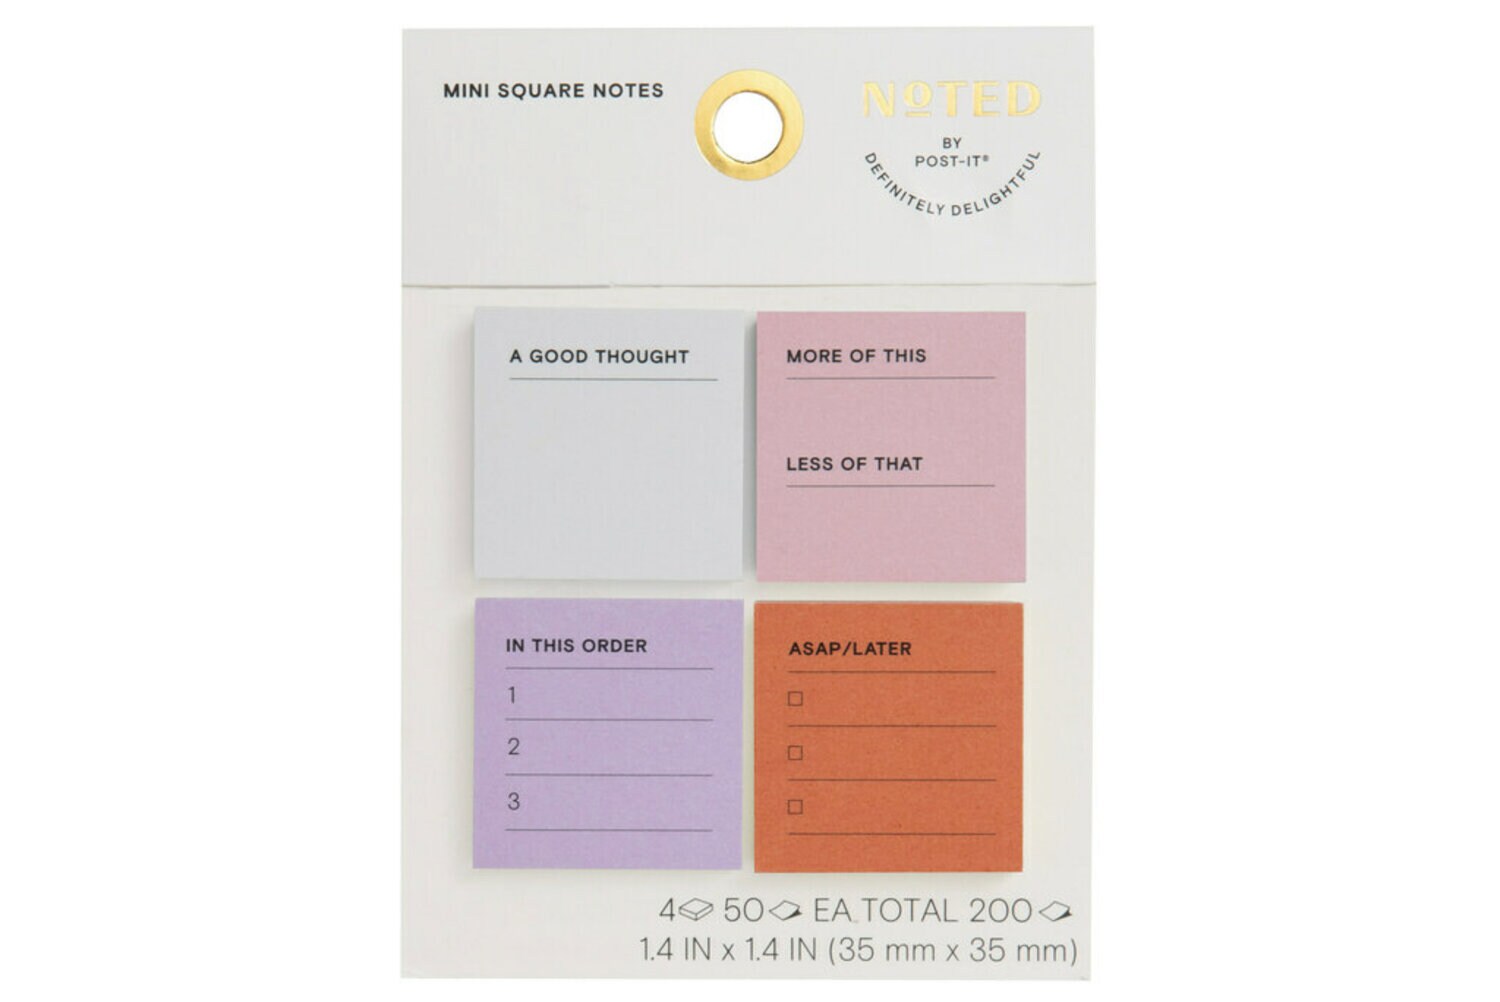 7100275842 - Post-it Mini Notes NTD6-MINI-2, 1.4 in x 1.4 in (35 mm x 35 mm)